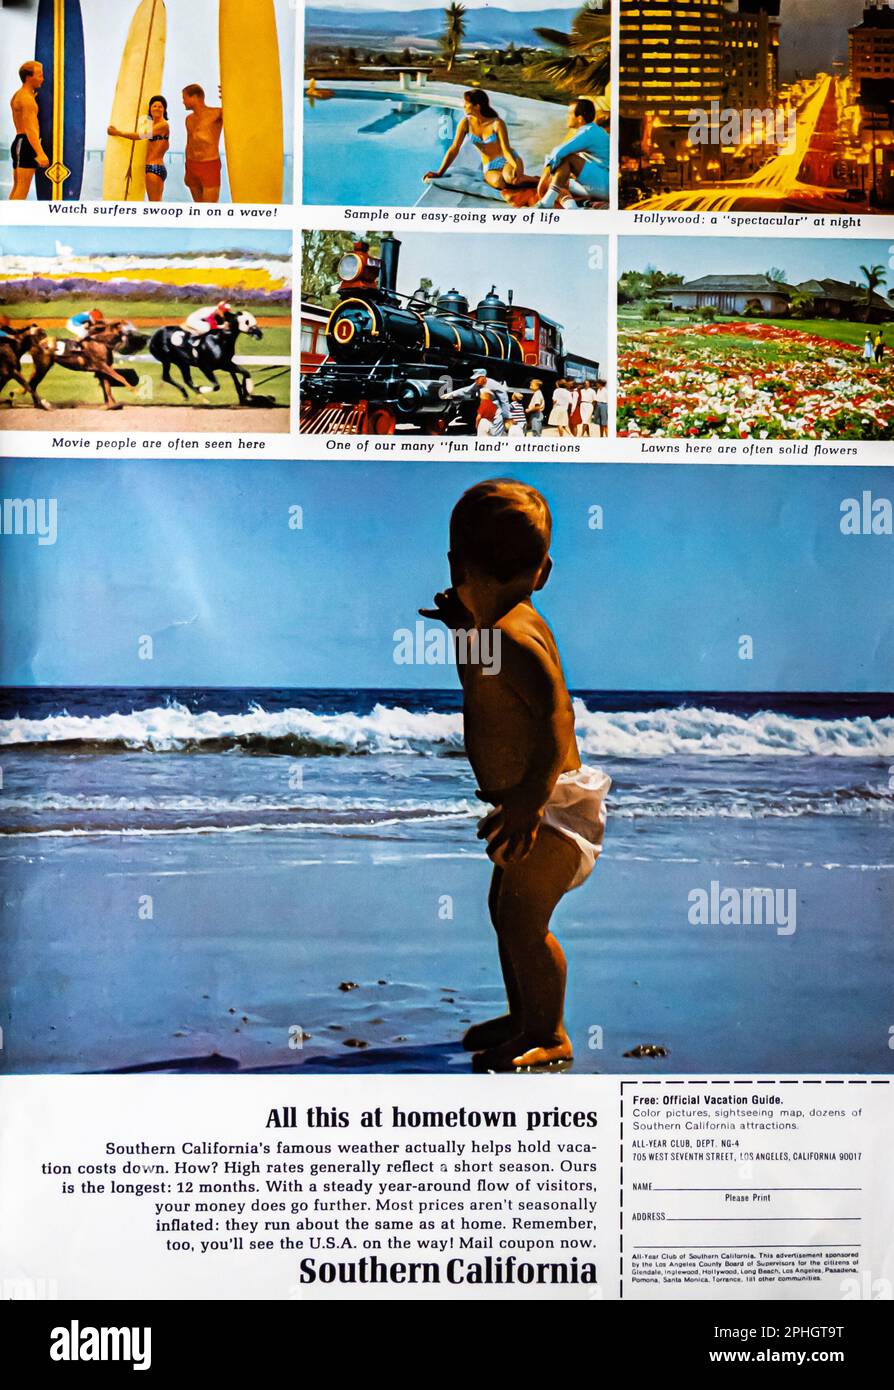 Voyage de Californie du Sud annonce touristique dans un magazine NatGeo, avril 1966 Banque D'Images